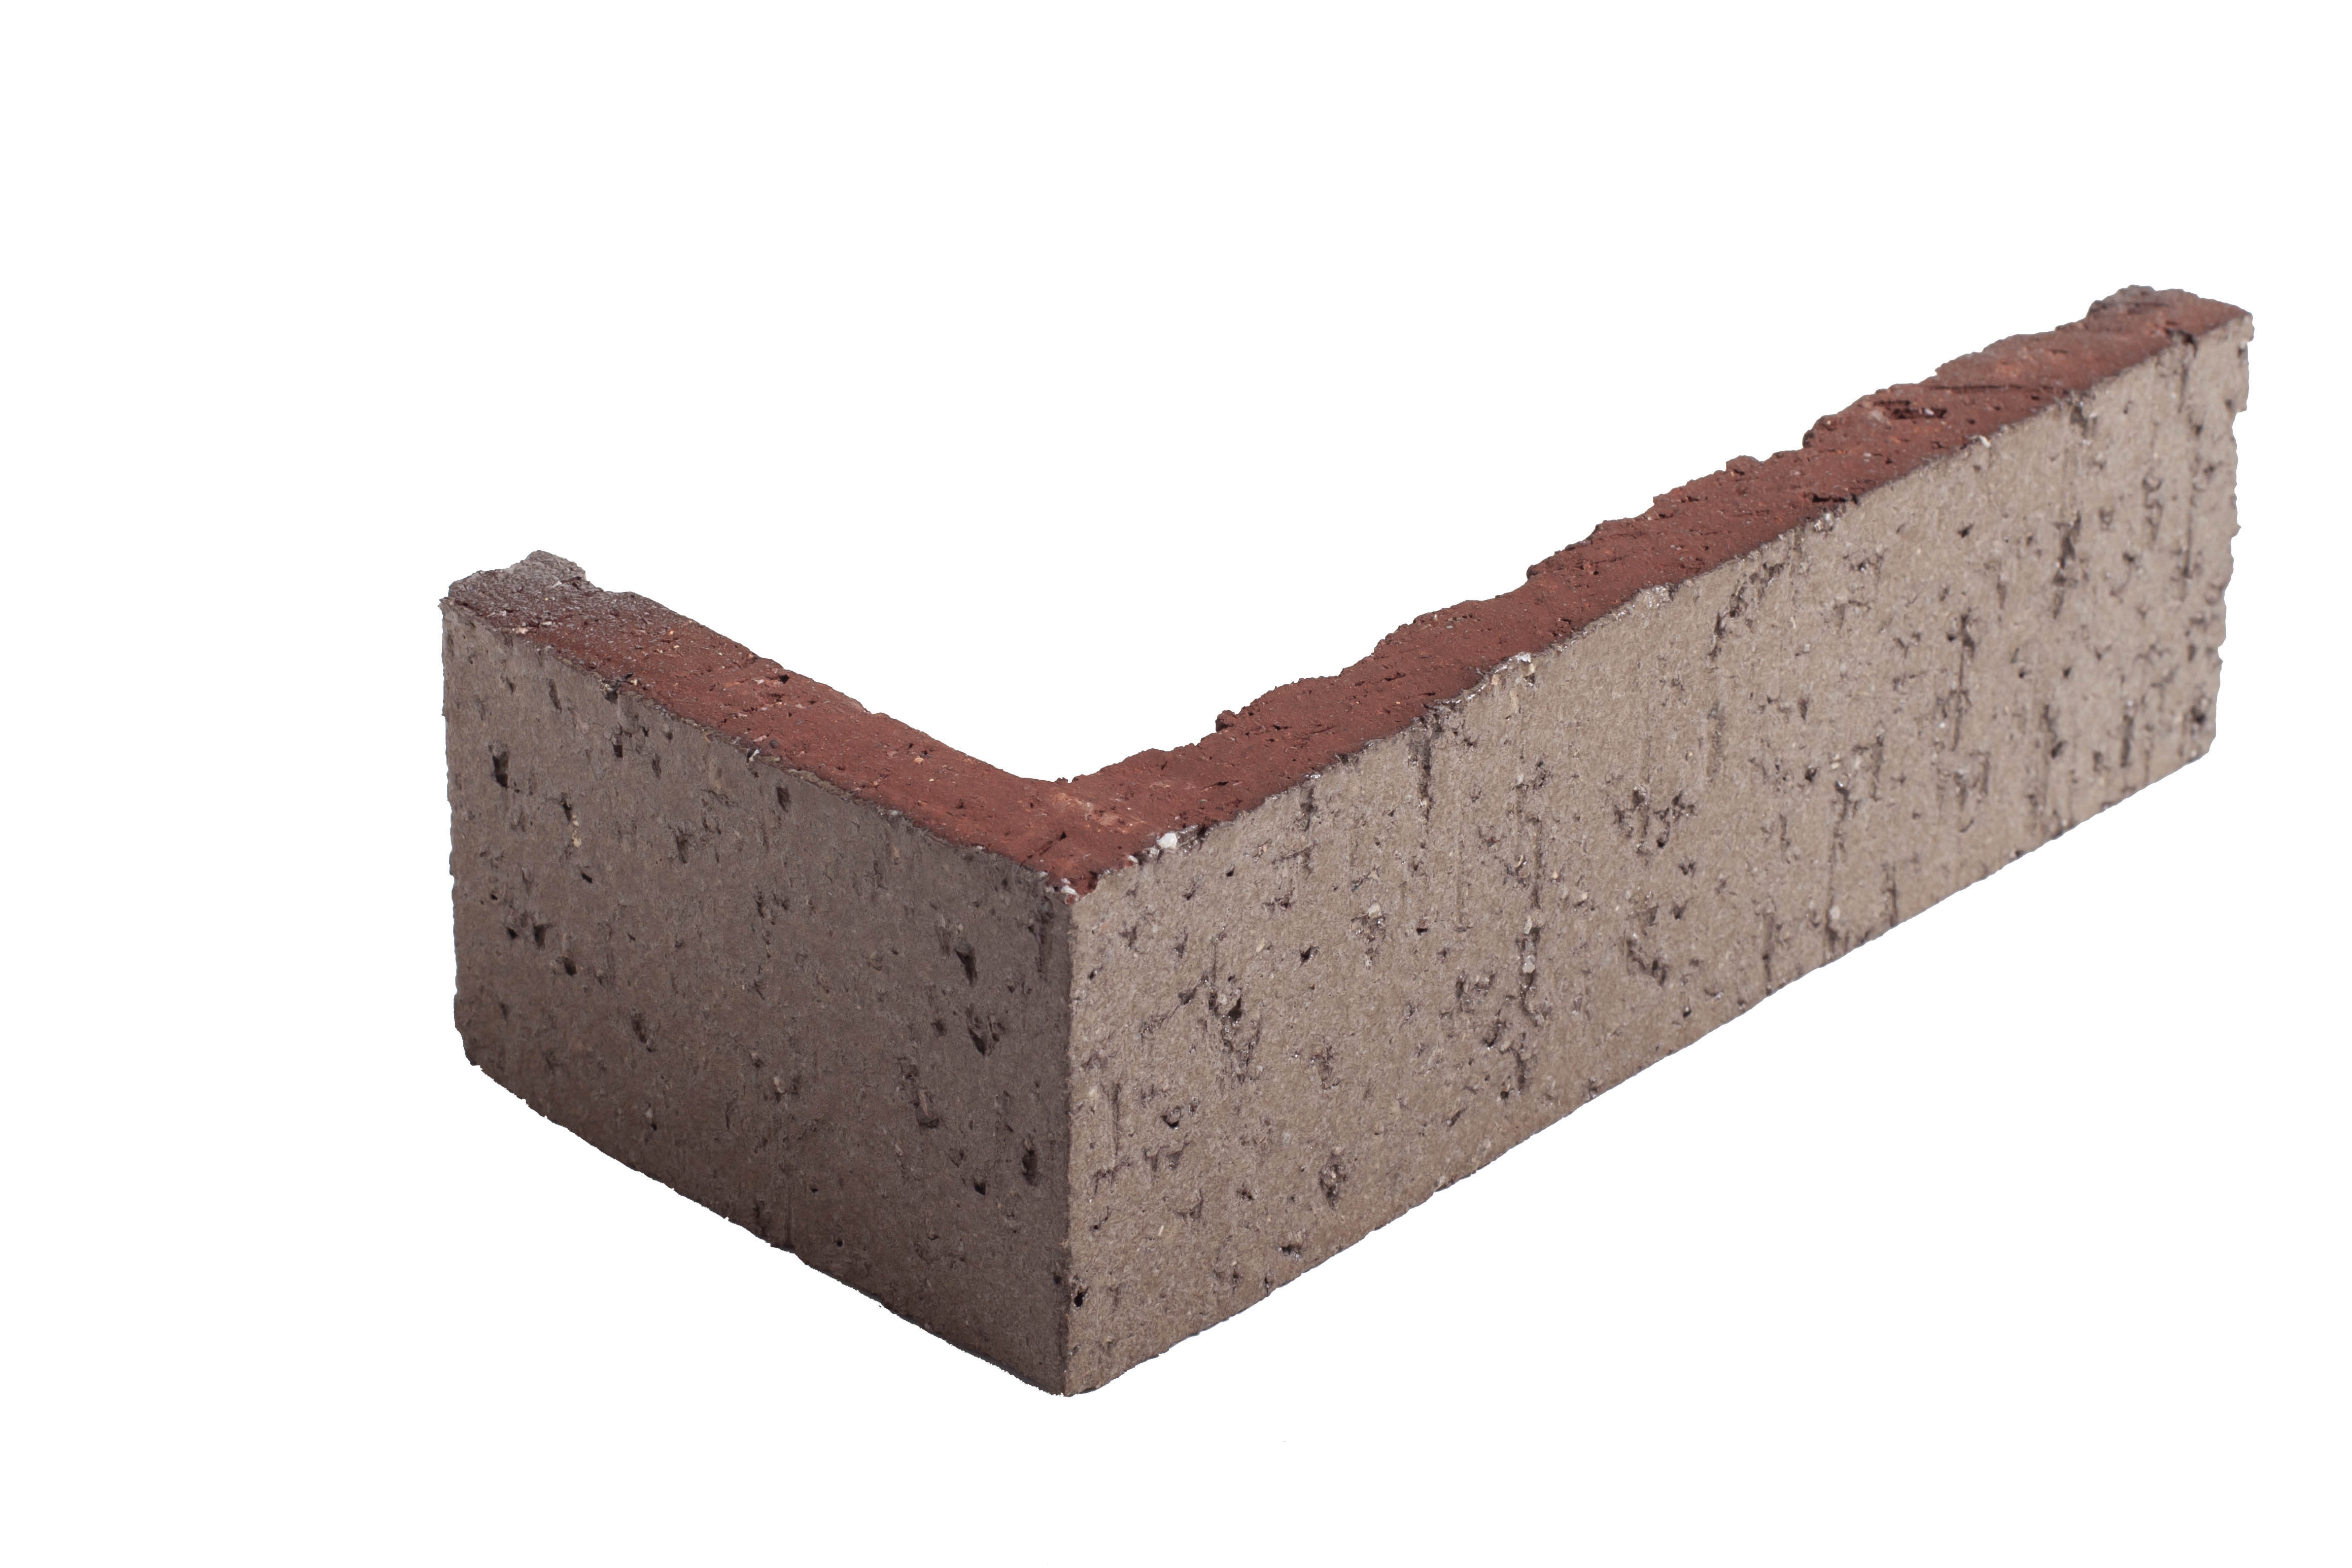 Arto Glazed Brick: Nutshell  (Corner 2¼"x7⅝"x⅝")